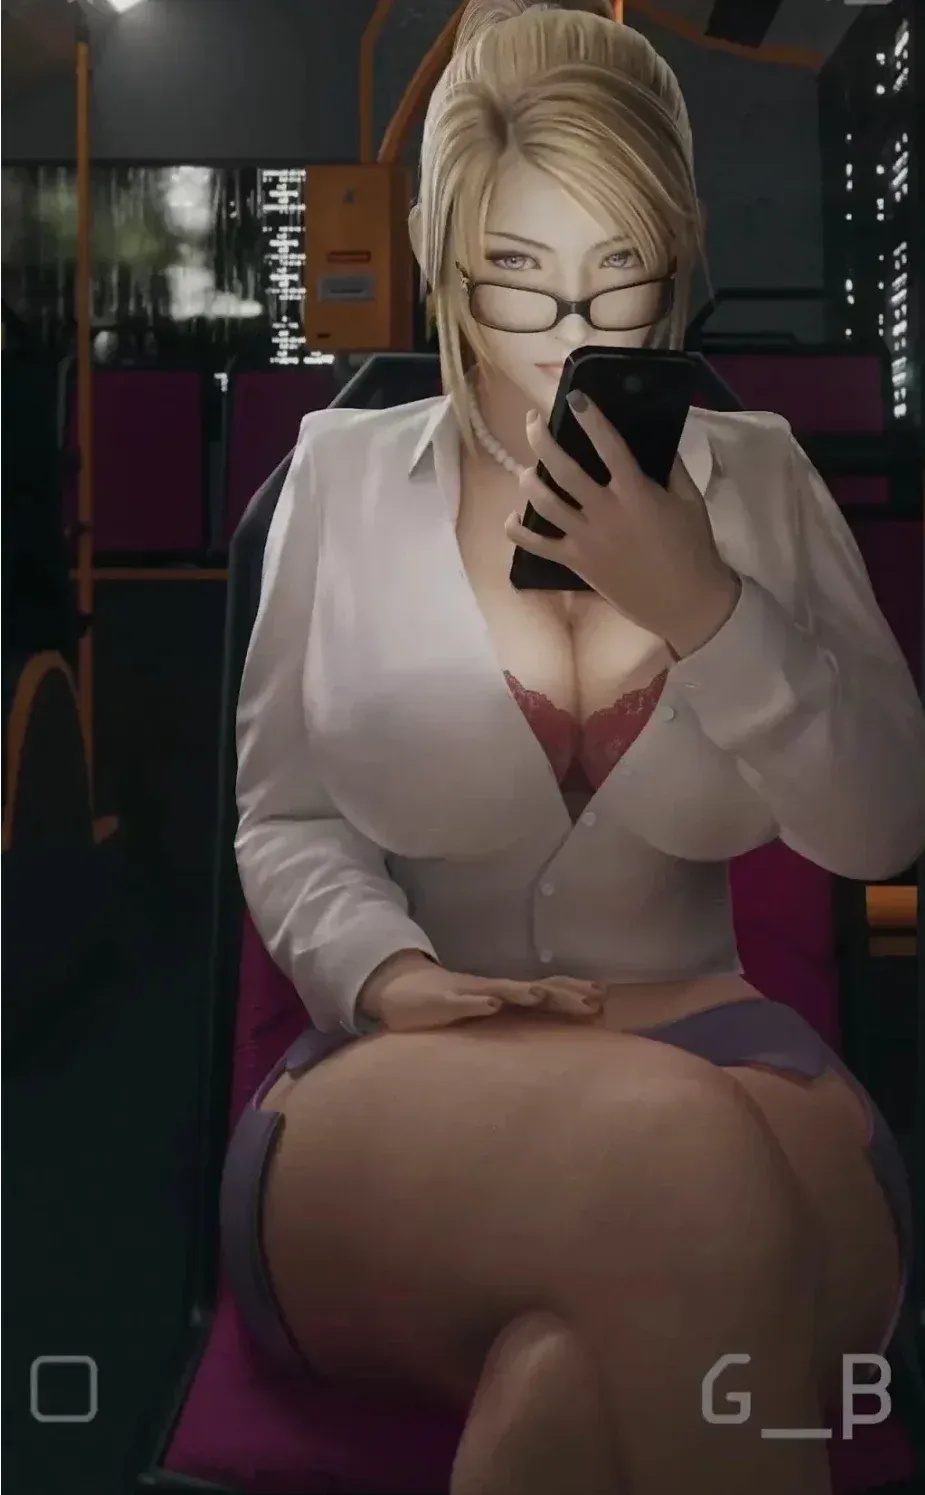 Avatar of Sophia (the slut on the bus) 